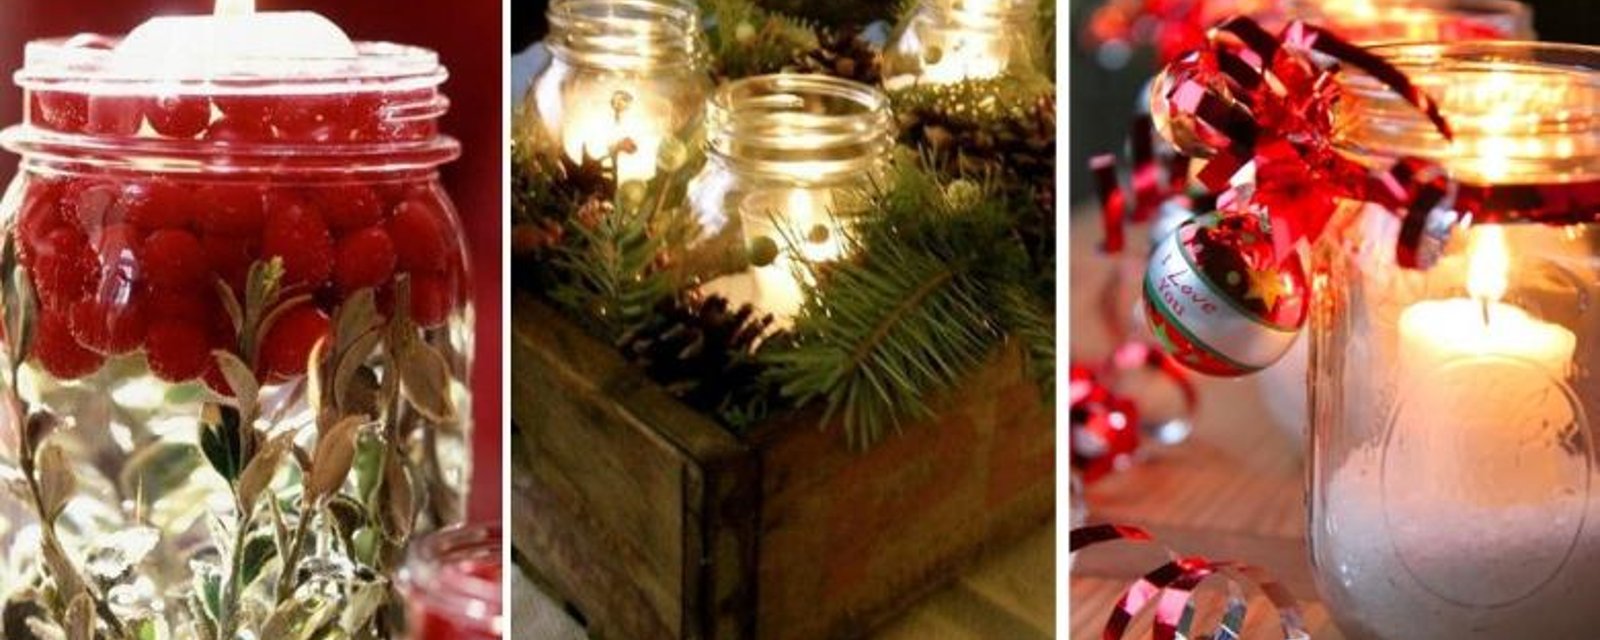 20 idées pour décorer la table de Noël avec des pots Mason, ou des pots récupérés de tous genres! 